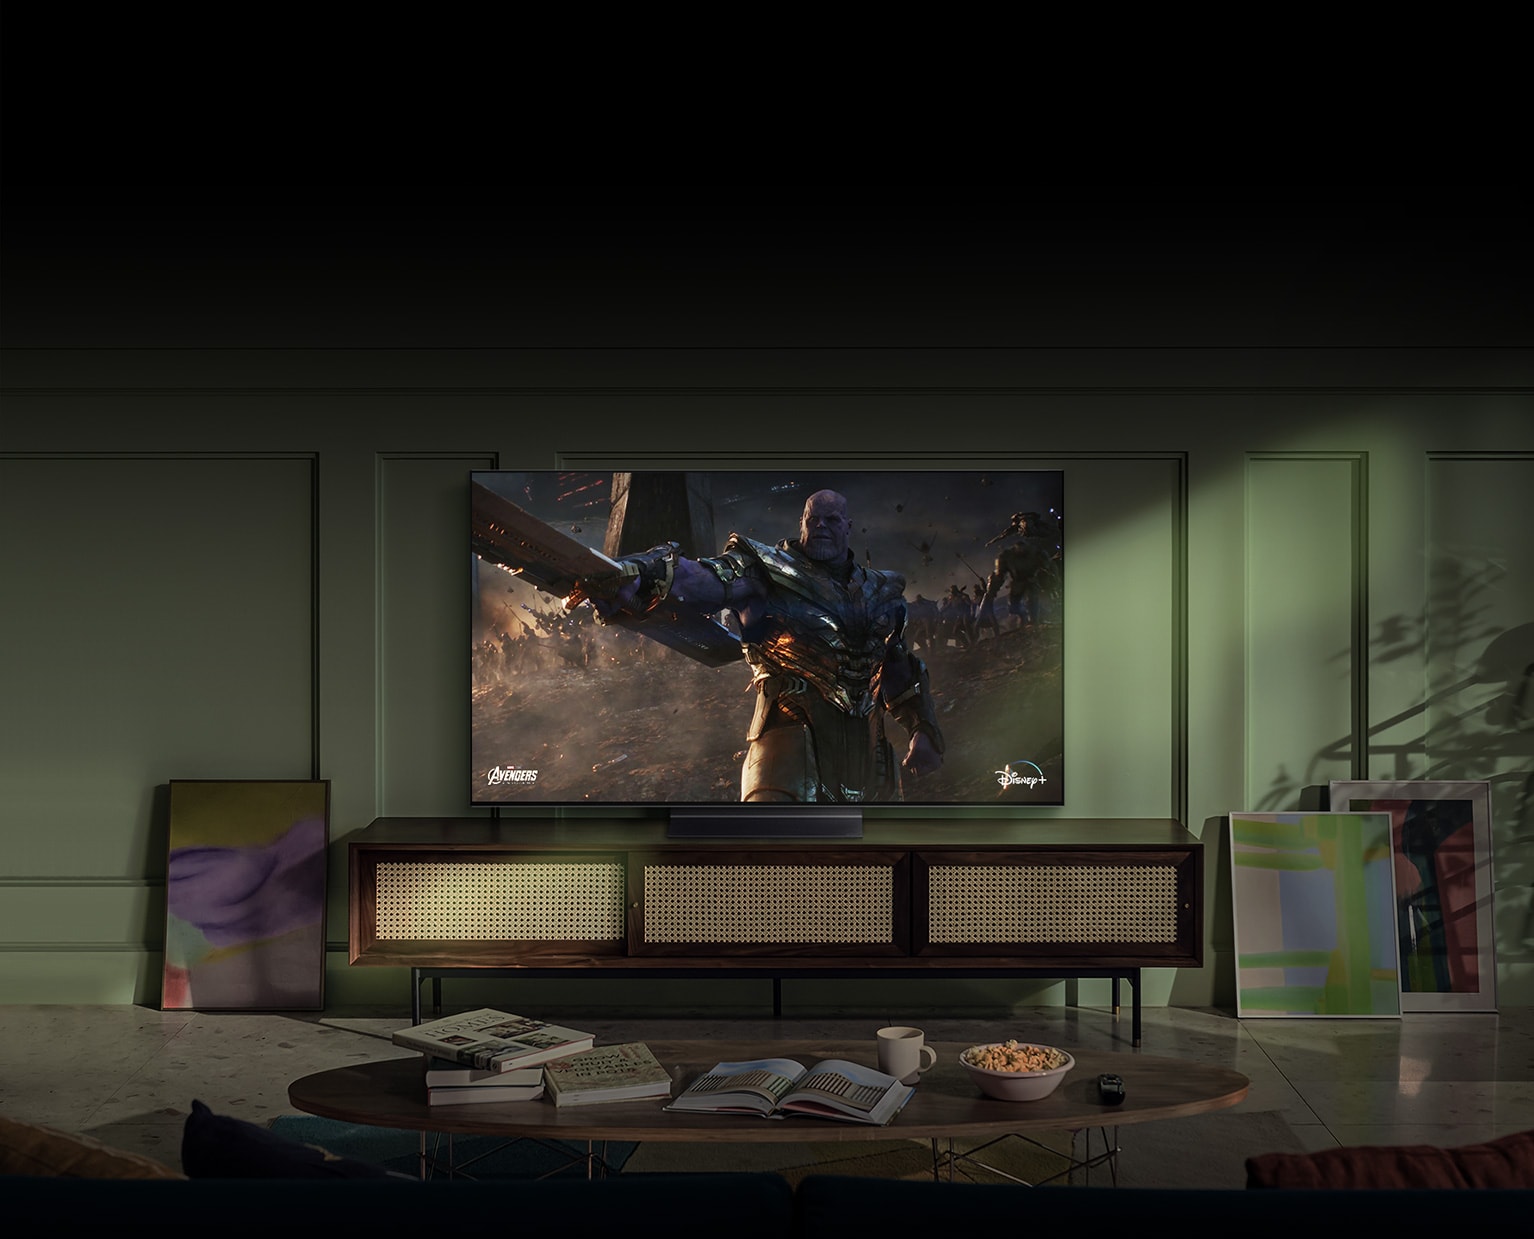 Egy nagy, falra szerelt LG OLED televízión egy akciófilm jelenete látható